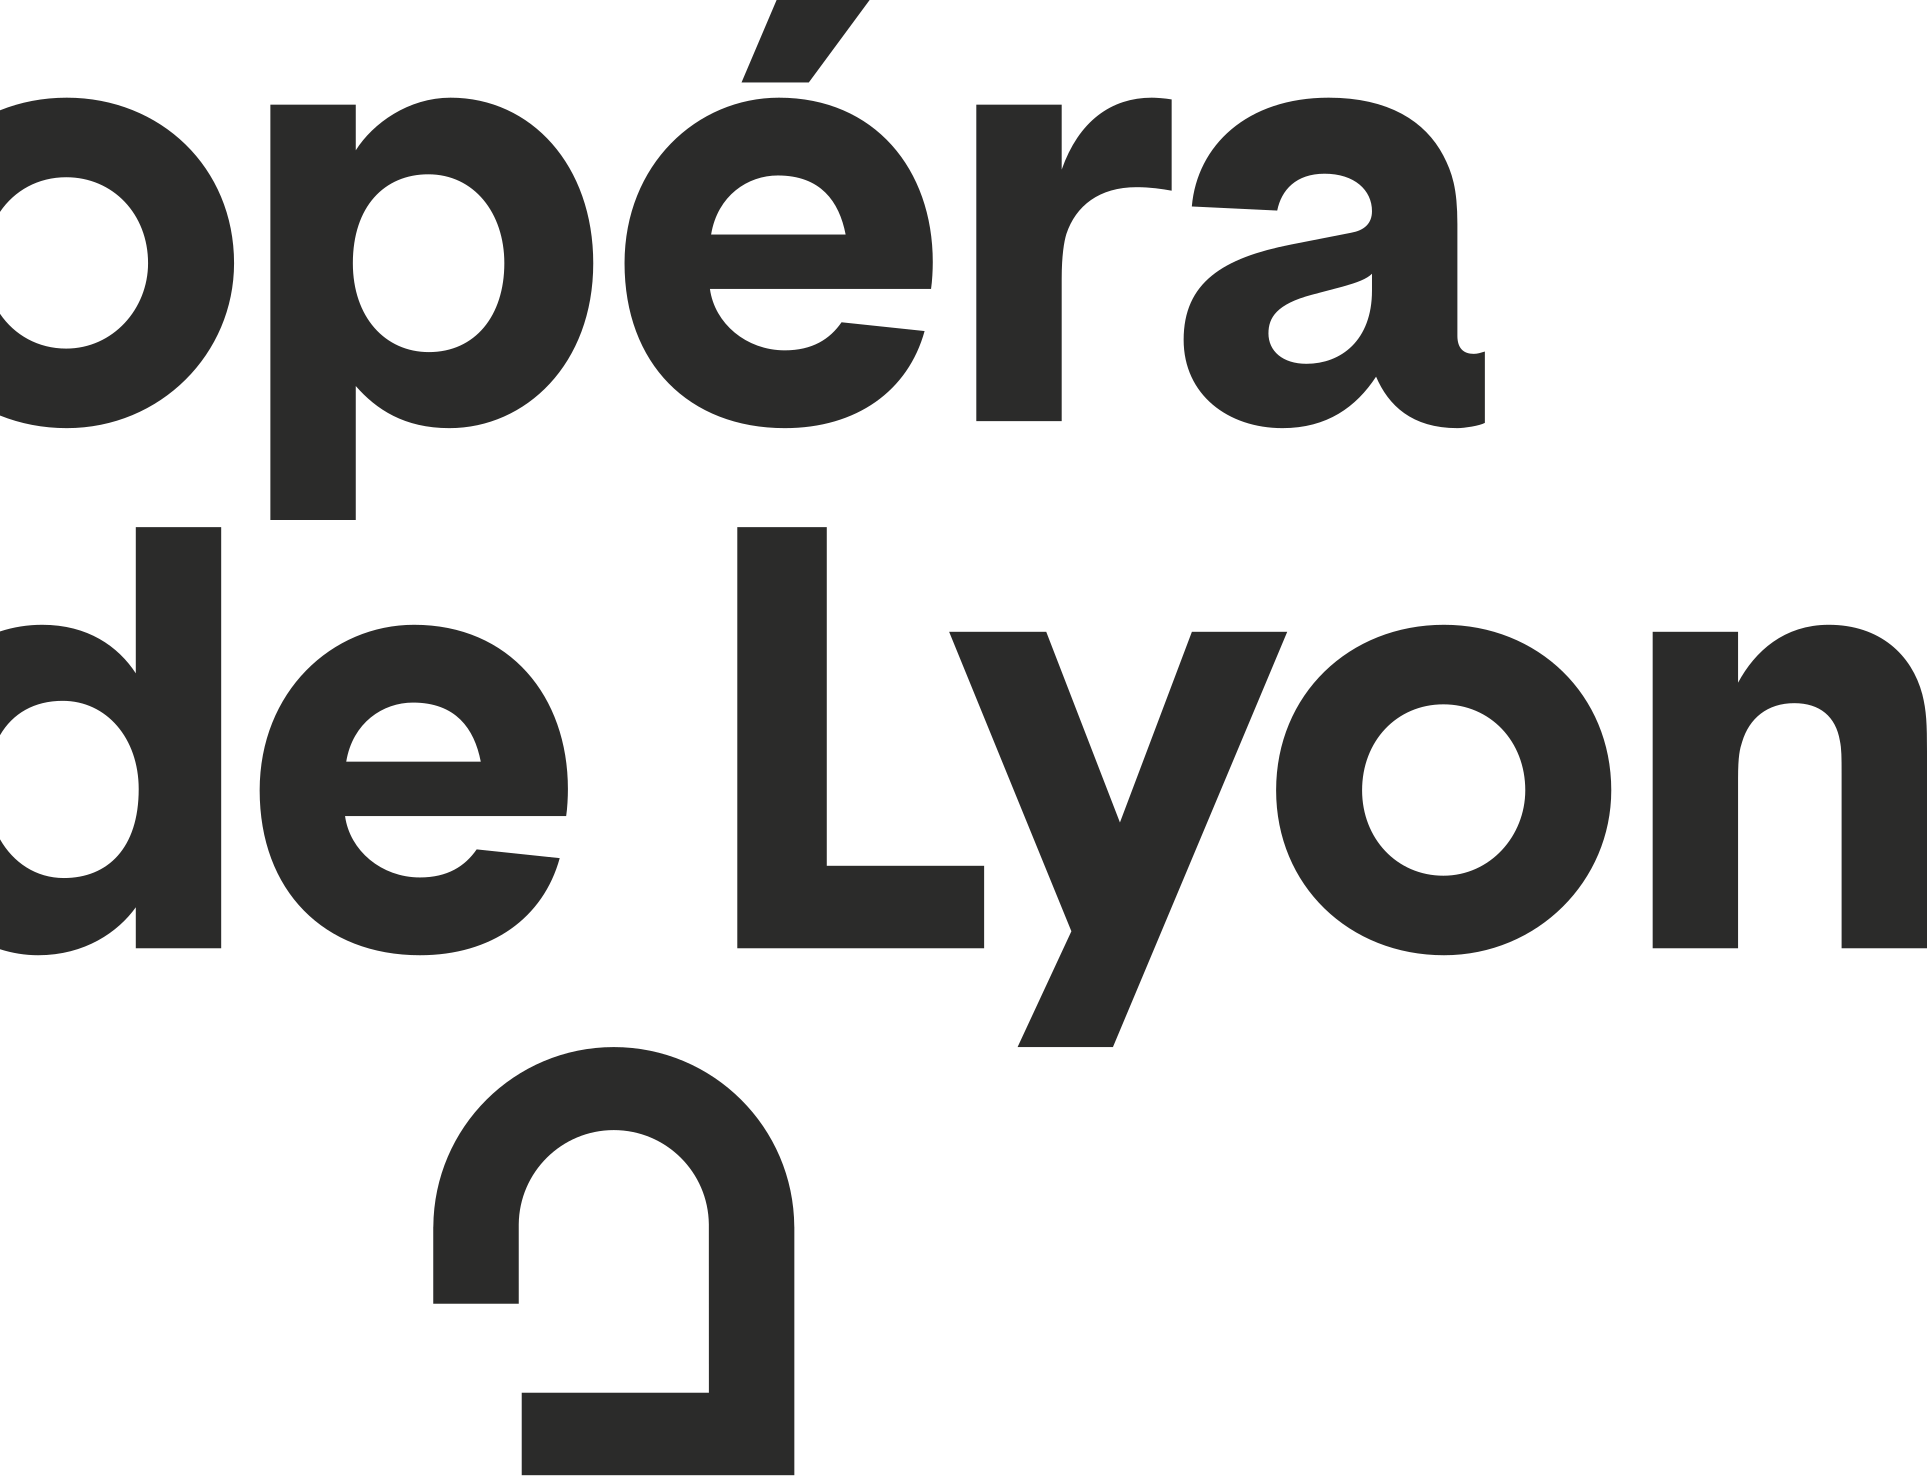 Logo de l'Opéra de Lyon